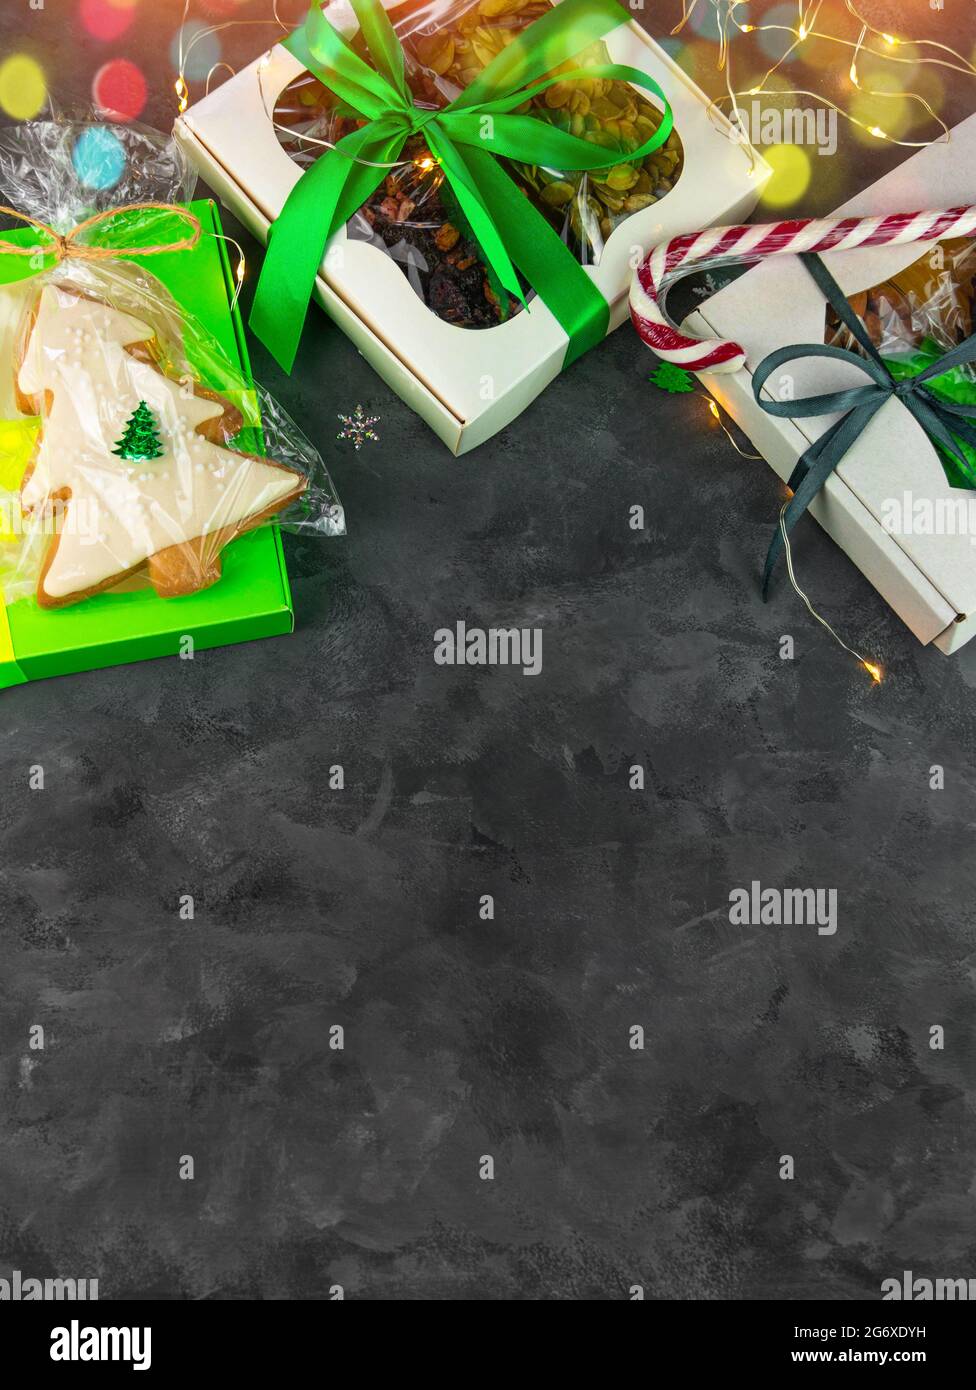 Scatole regalo di Natale con set di frutta secca diversi agrumi canditi confezionate singolarmente spazio di copia verticale piatto. Festivita' invernali Foto Stock